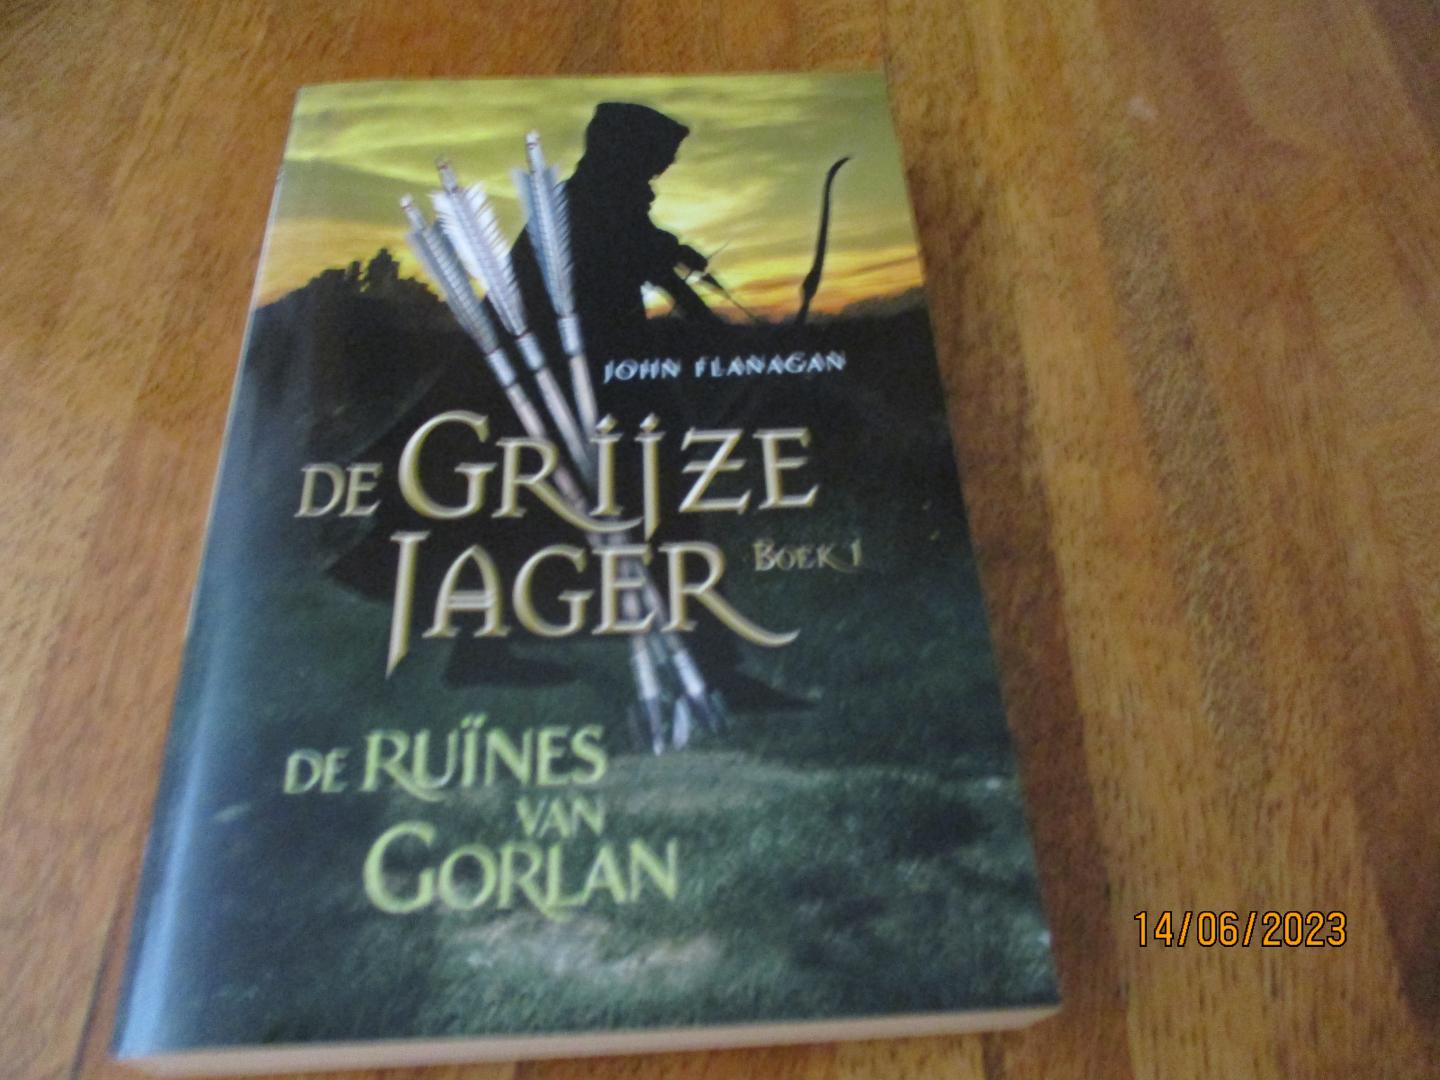 John Flanagan - De grijze jager Boek 1 De ruïnes van Gorlan